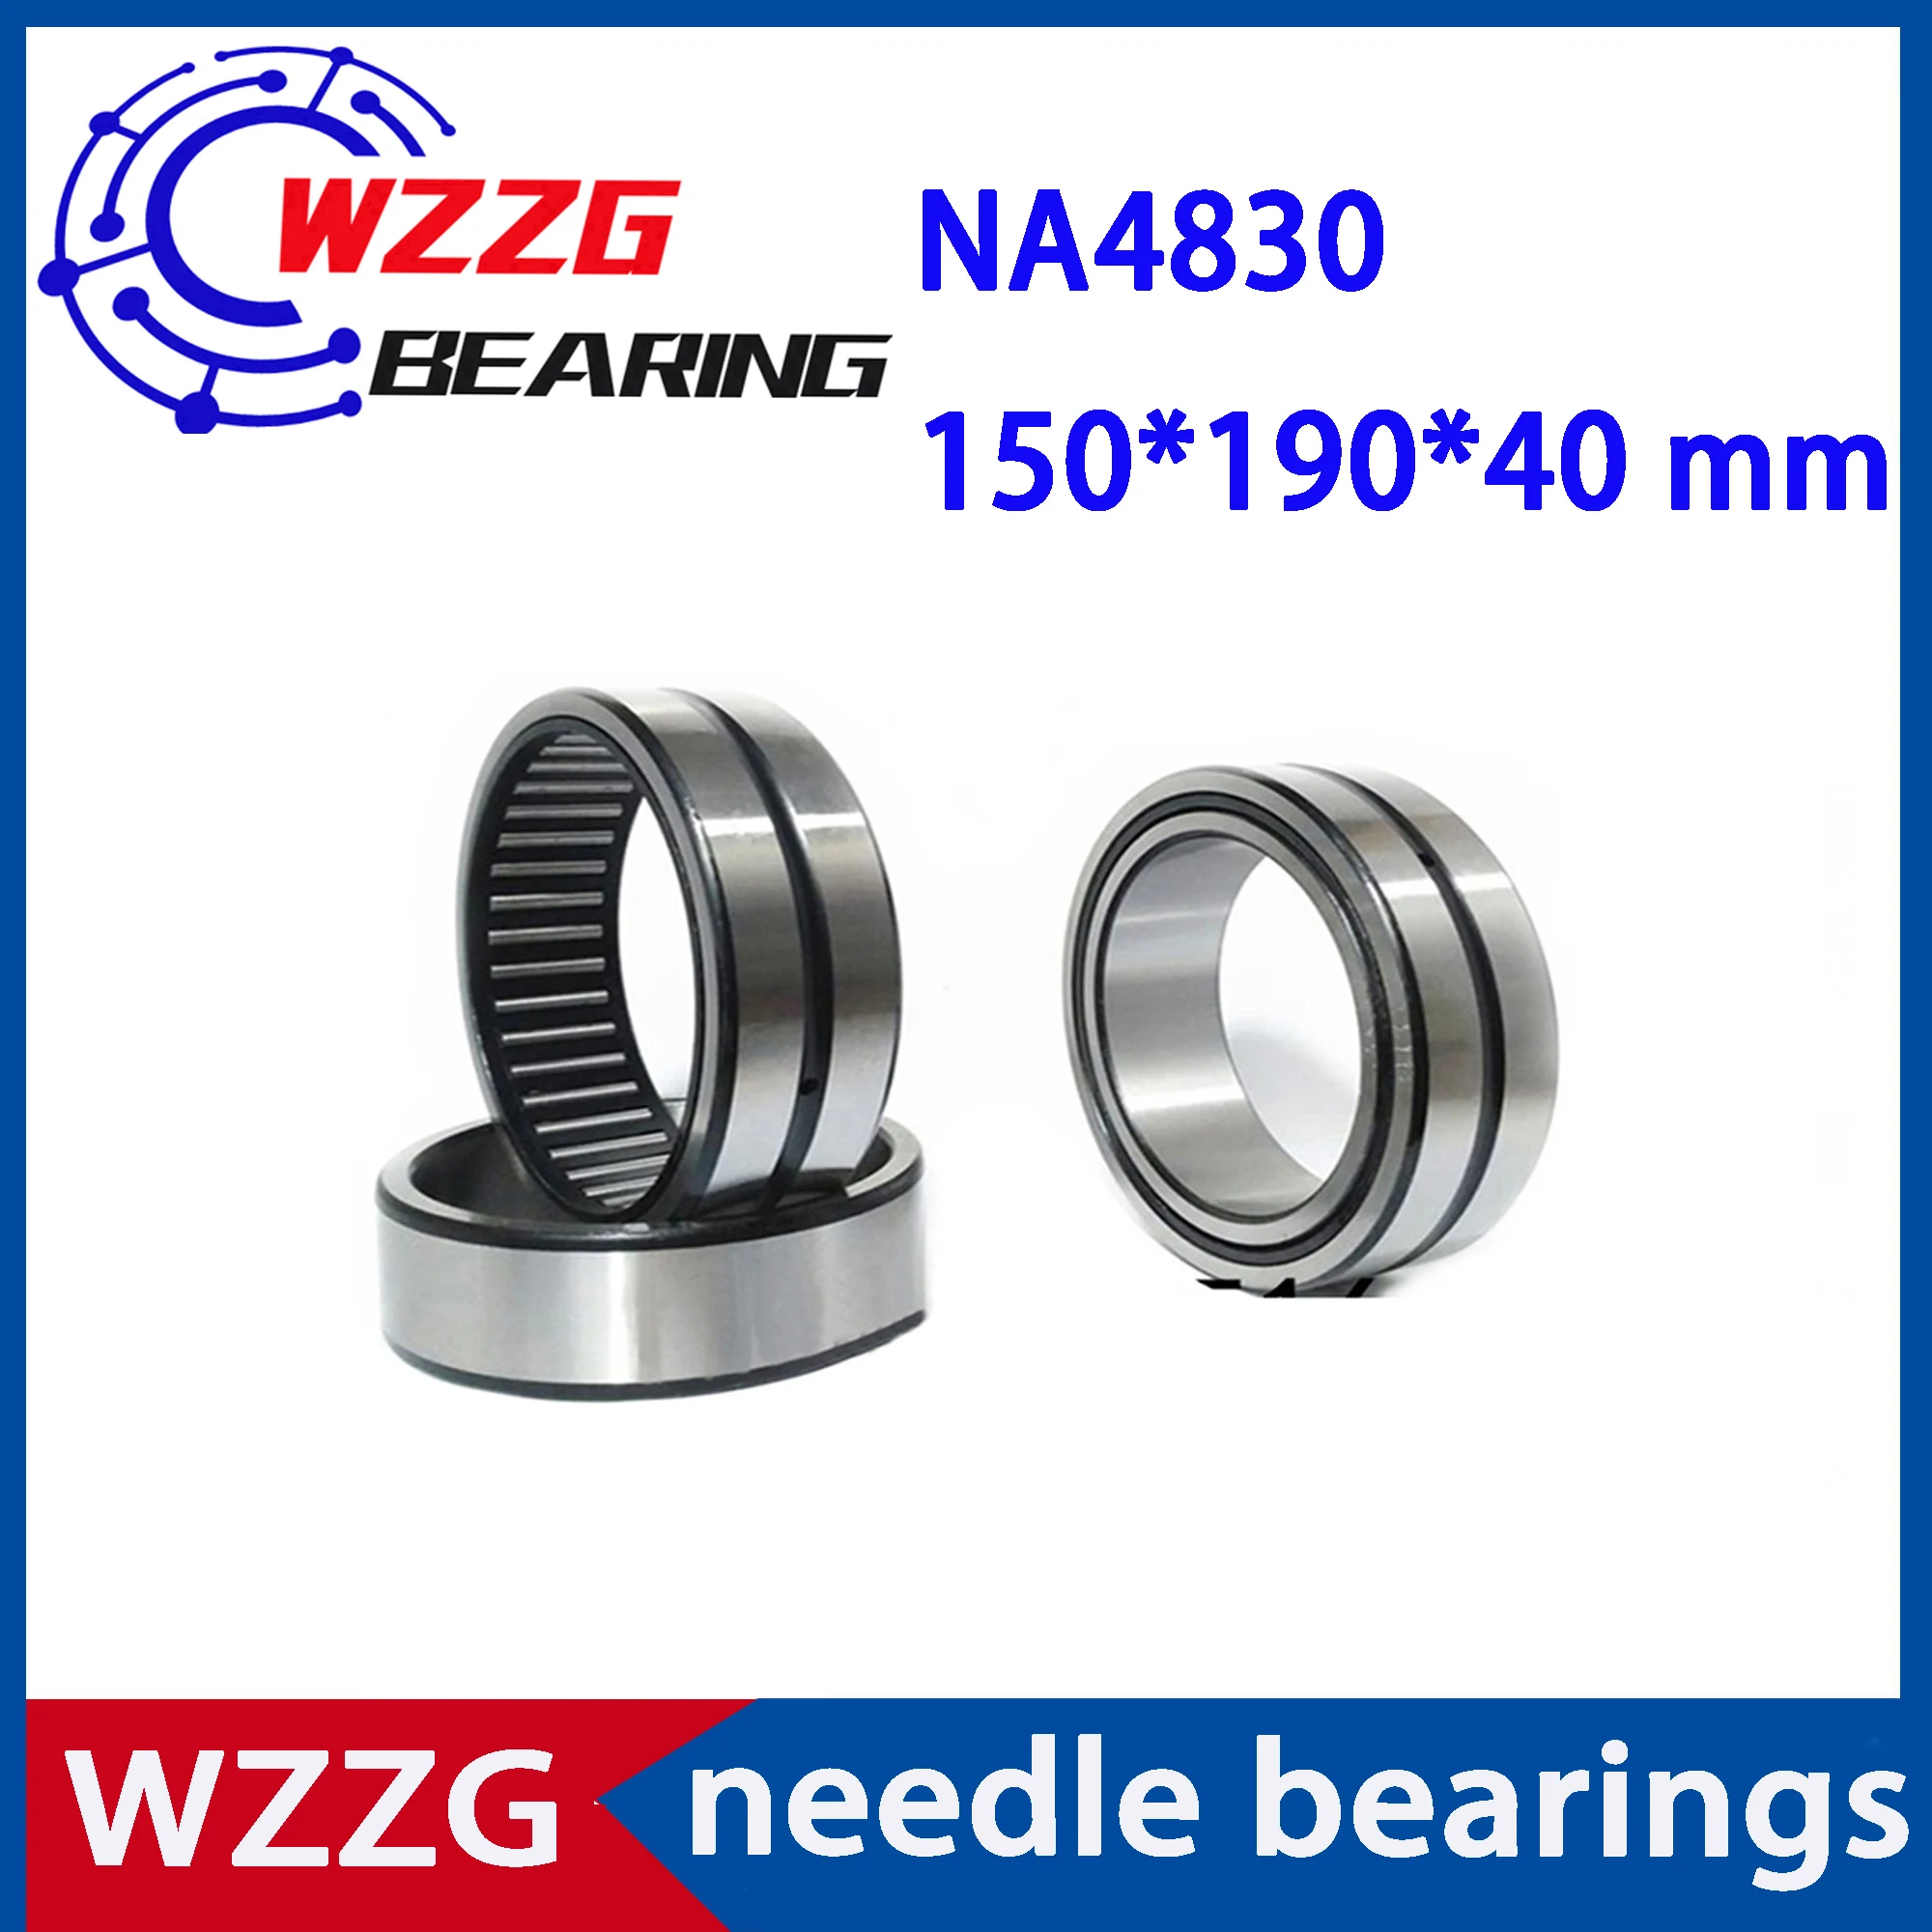 Высококачественный подшипник WZZG NA4830 150*190*40 игольчатые роликовые подшипники с твердым кольцом диаметром мм (1 шт.) с внутренним кольцом